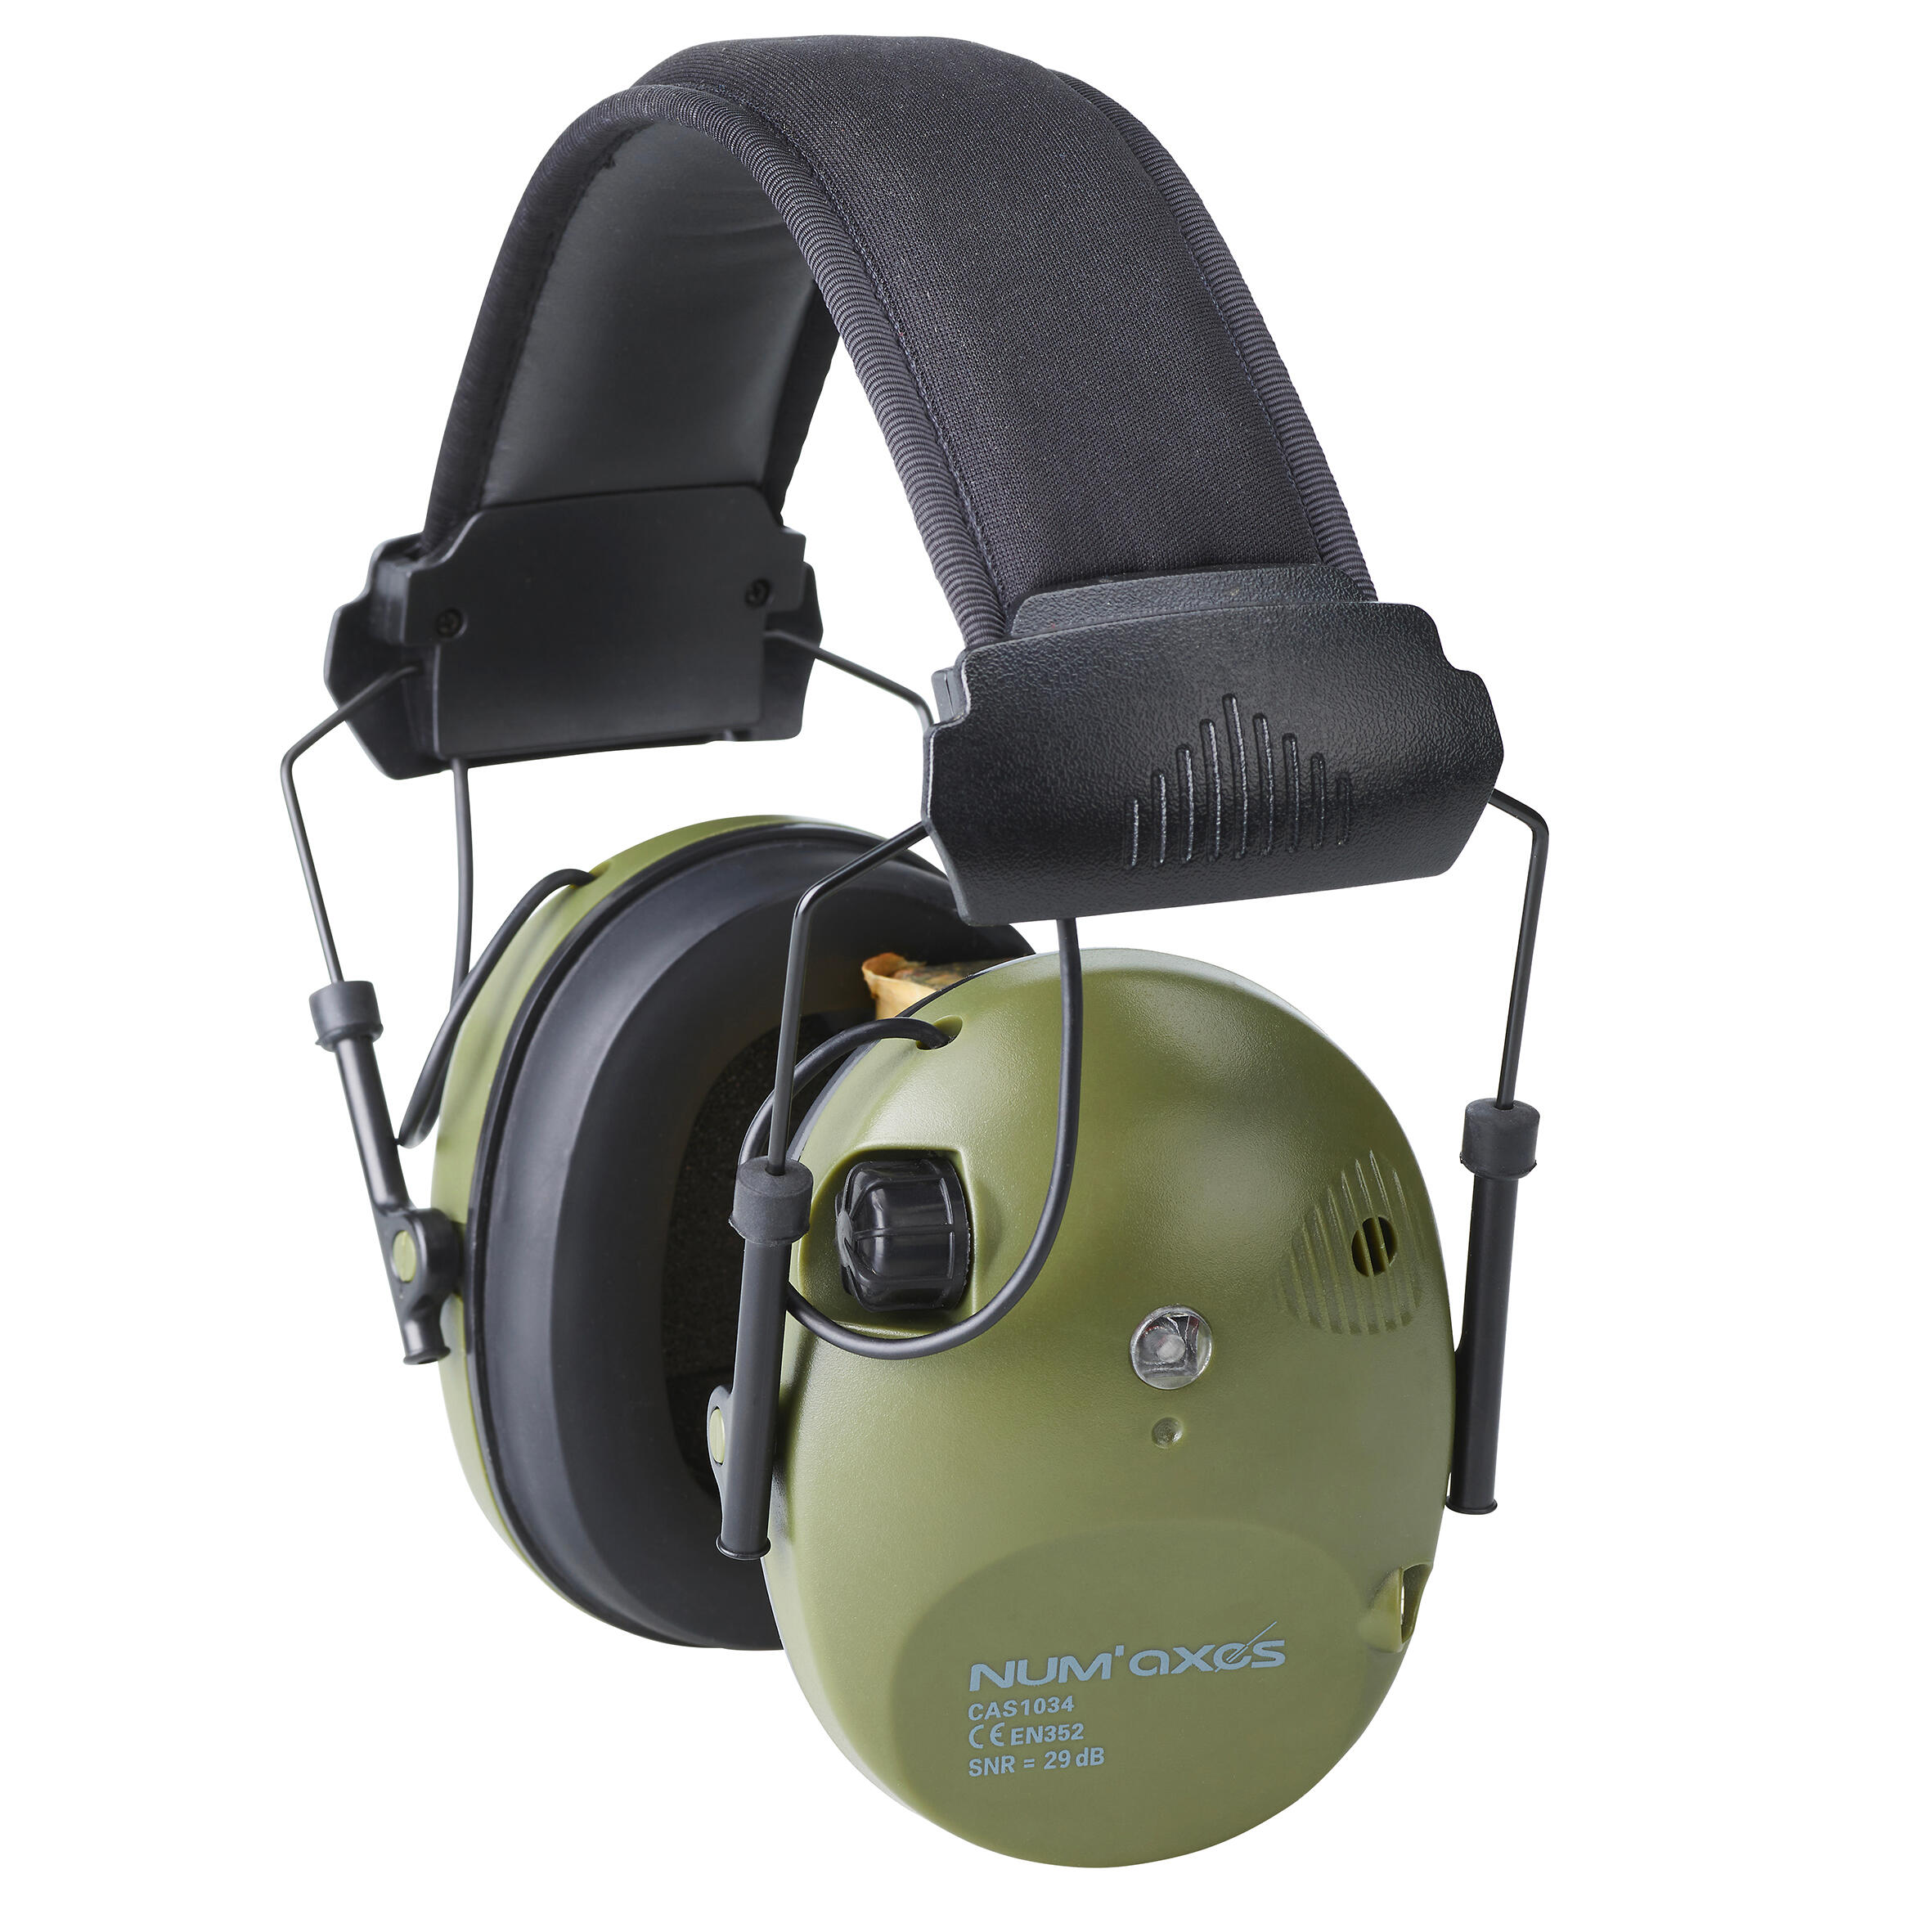 Cască de protecție auditivă electronică anti-zgomot CAS1034 Num Axes decathlon